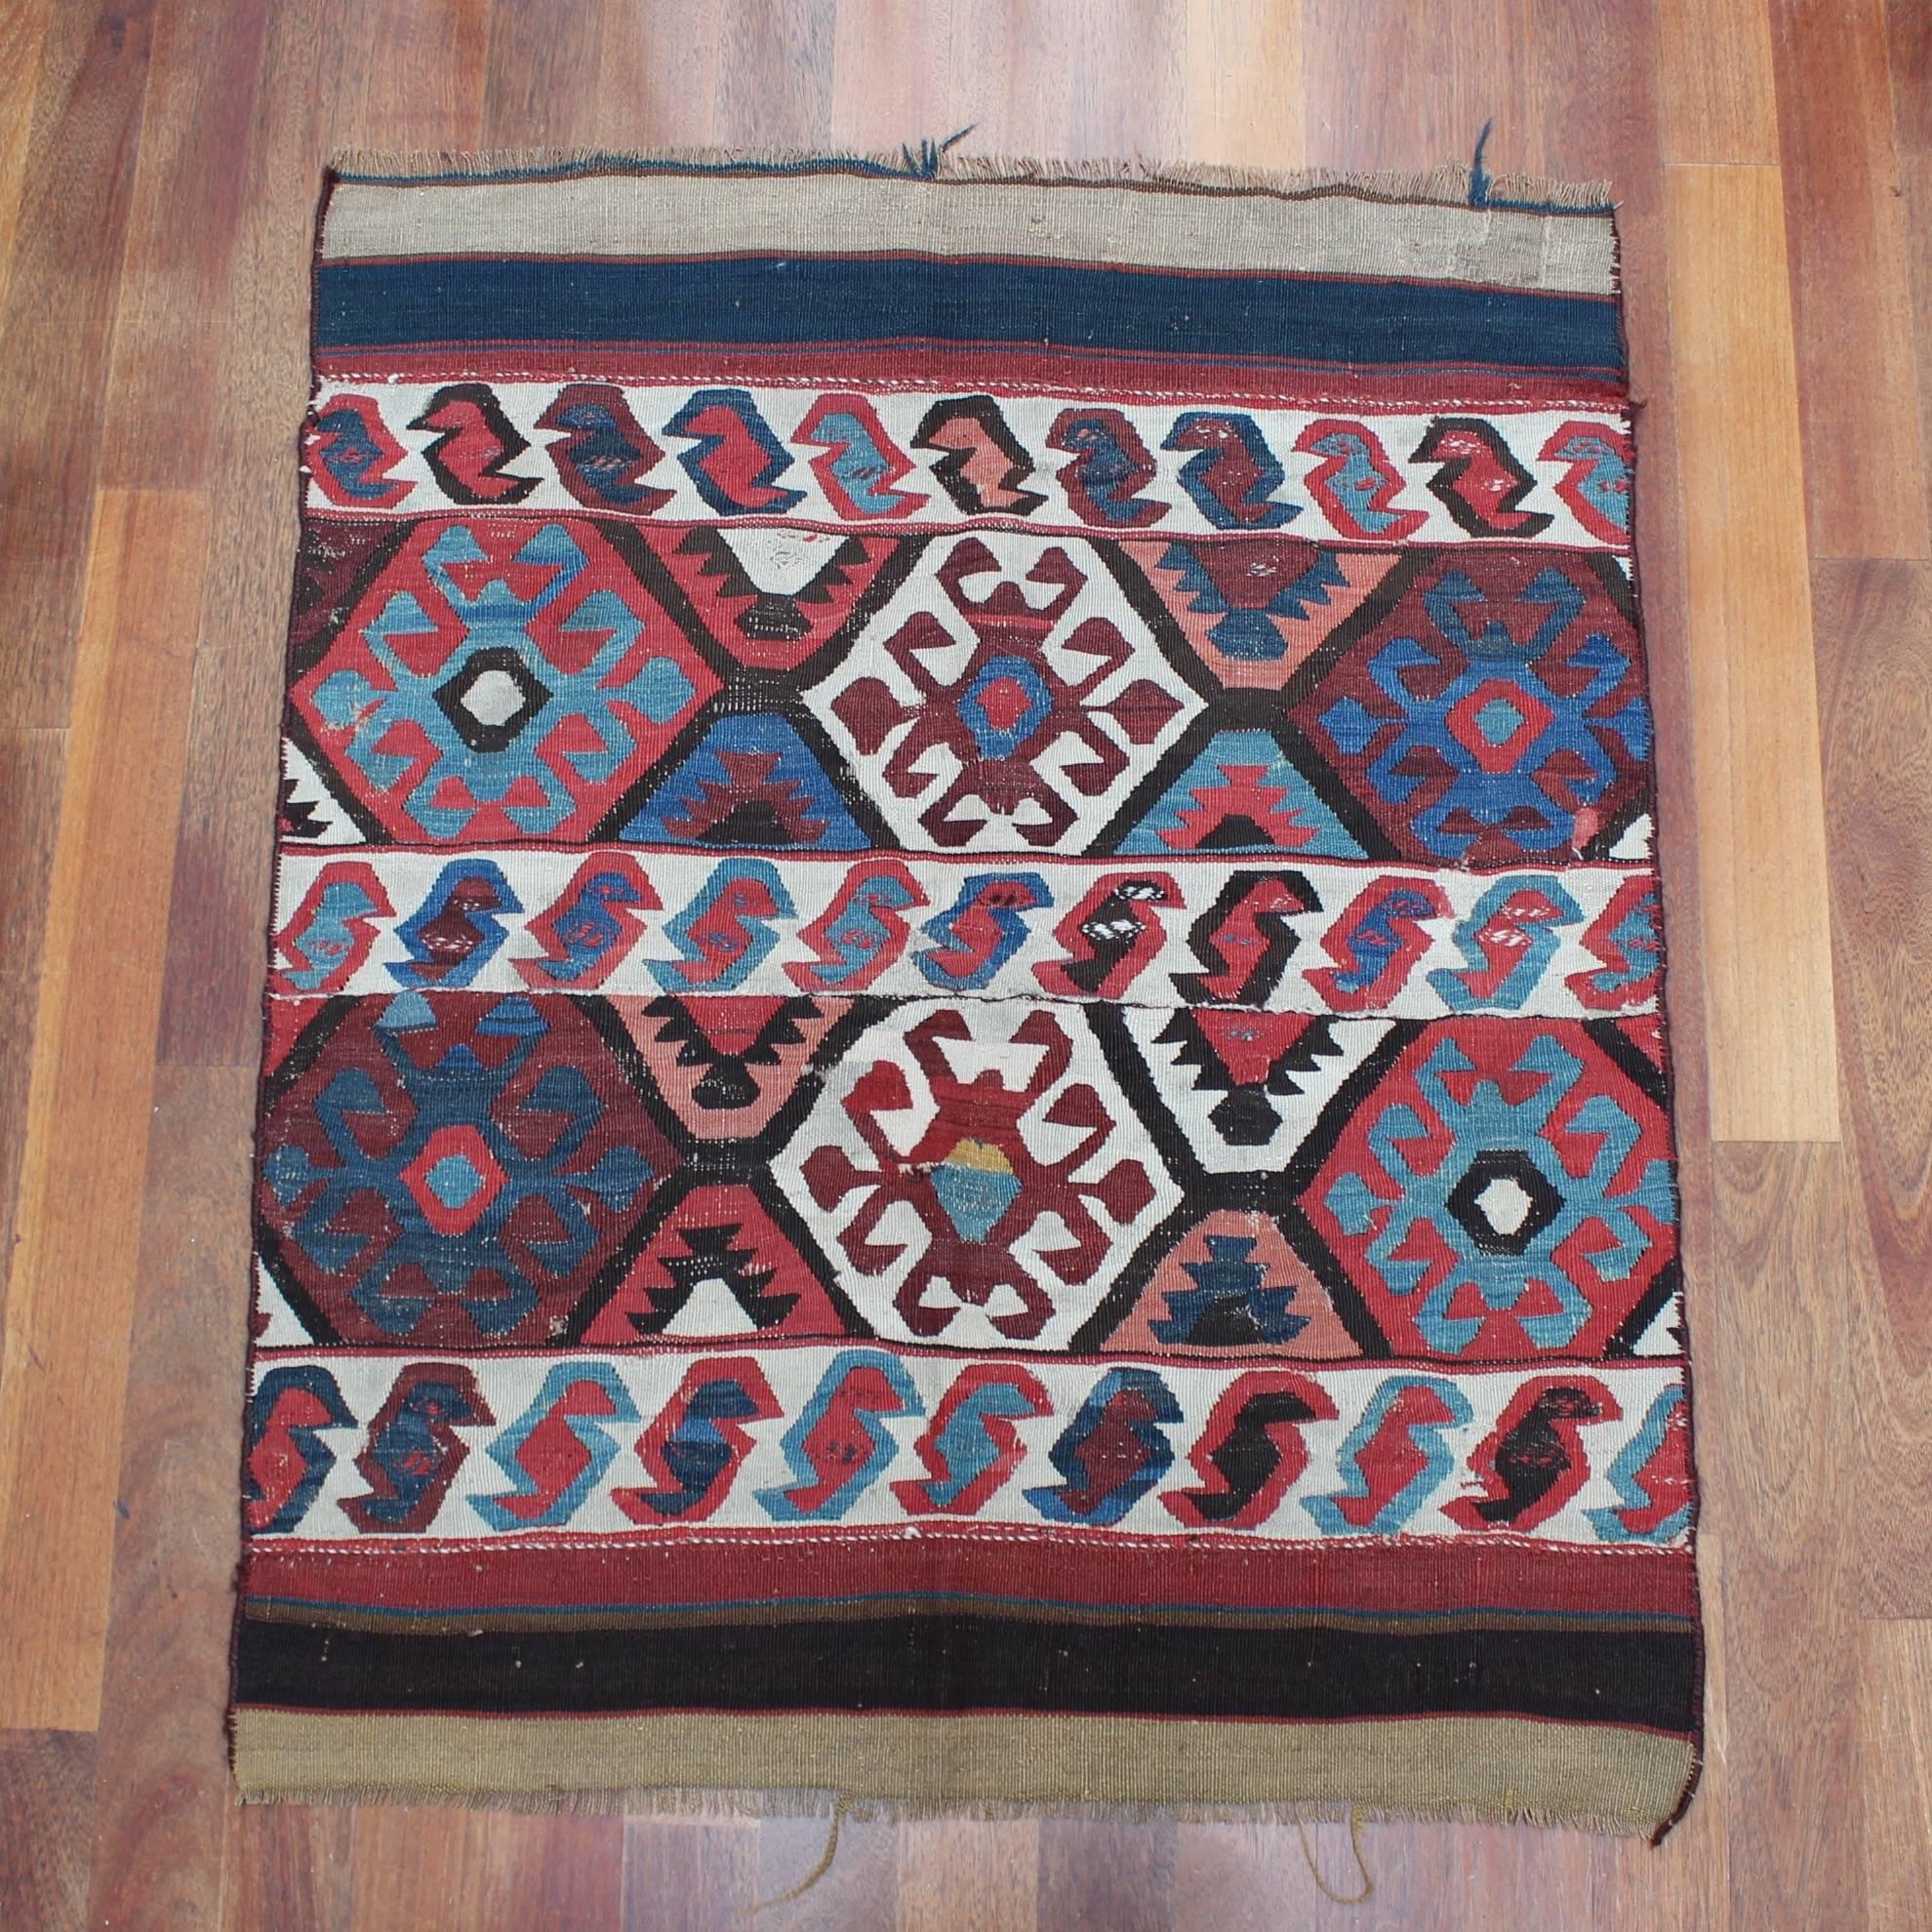 Ancien tapis Kilim turc d'Anatolie à motif de scorpion, (vers le début des années 1900) en très bon état. Une courte vidéo de l'objet est disponible sur demande. 

Dimensions :
120 cm (47.24